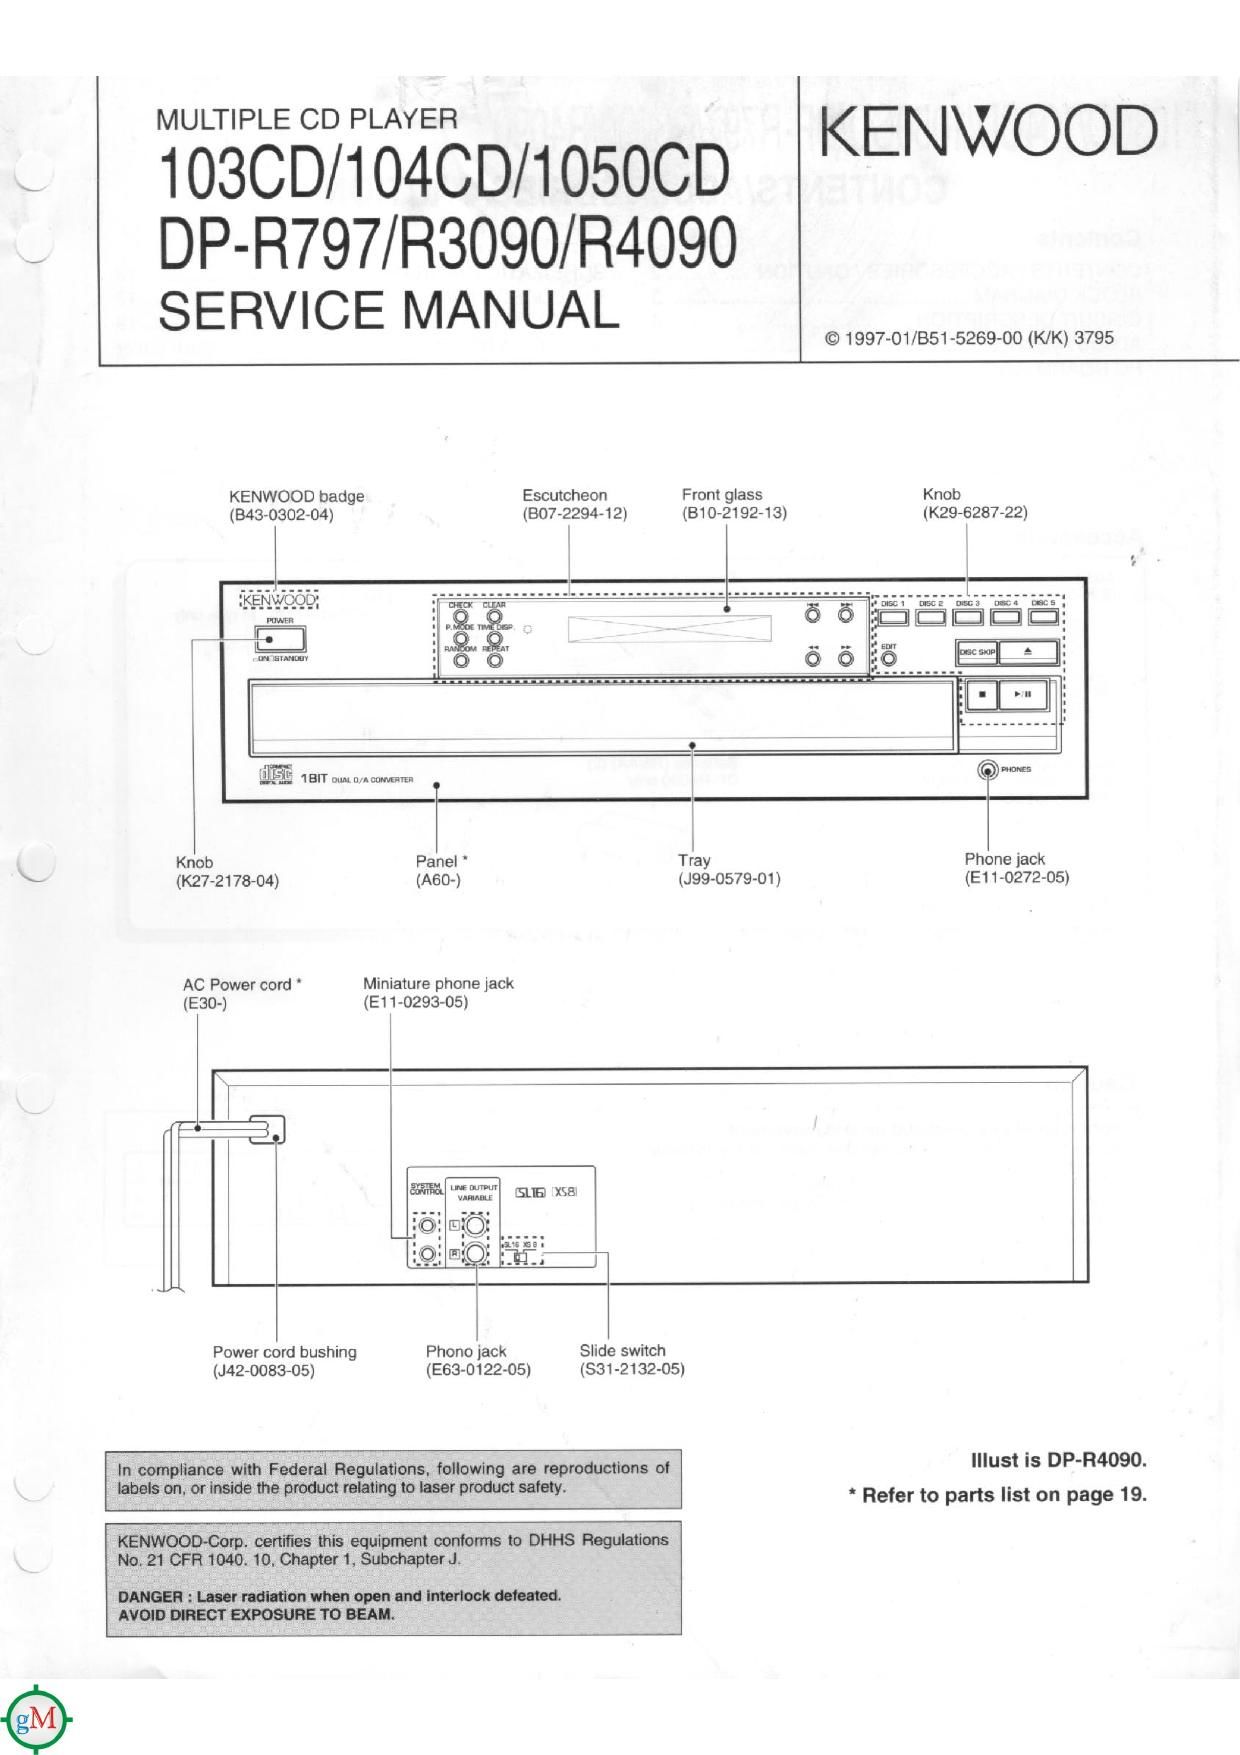 Kenwood 103 CD Service Manual